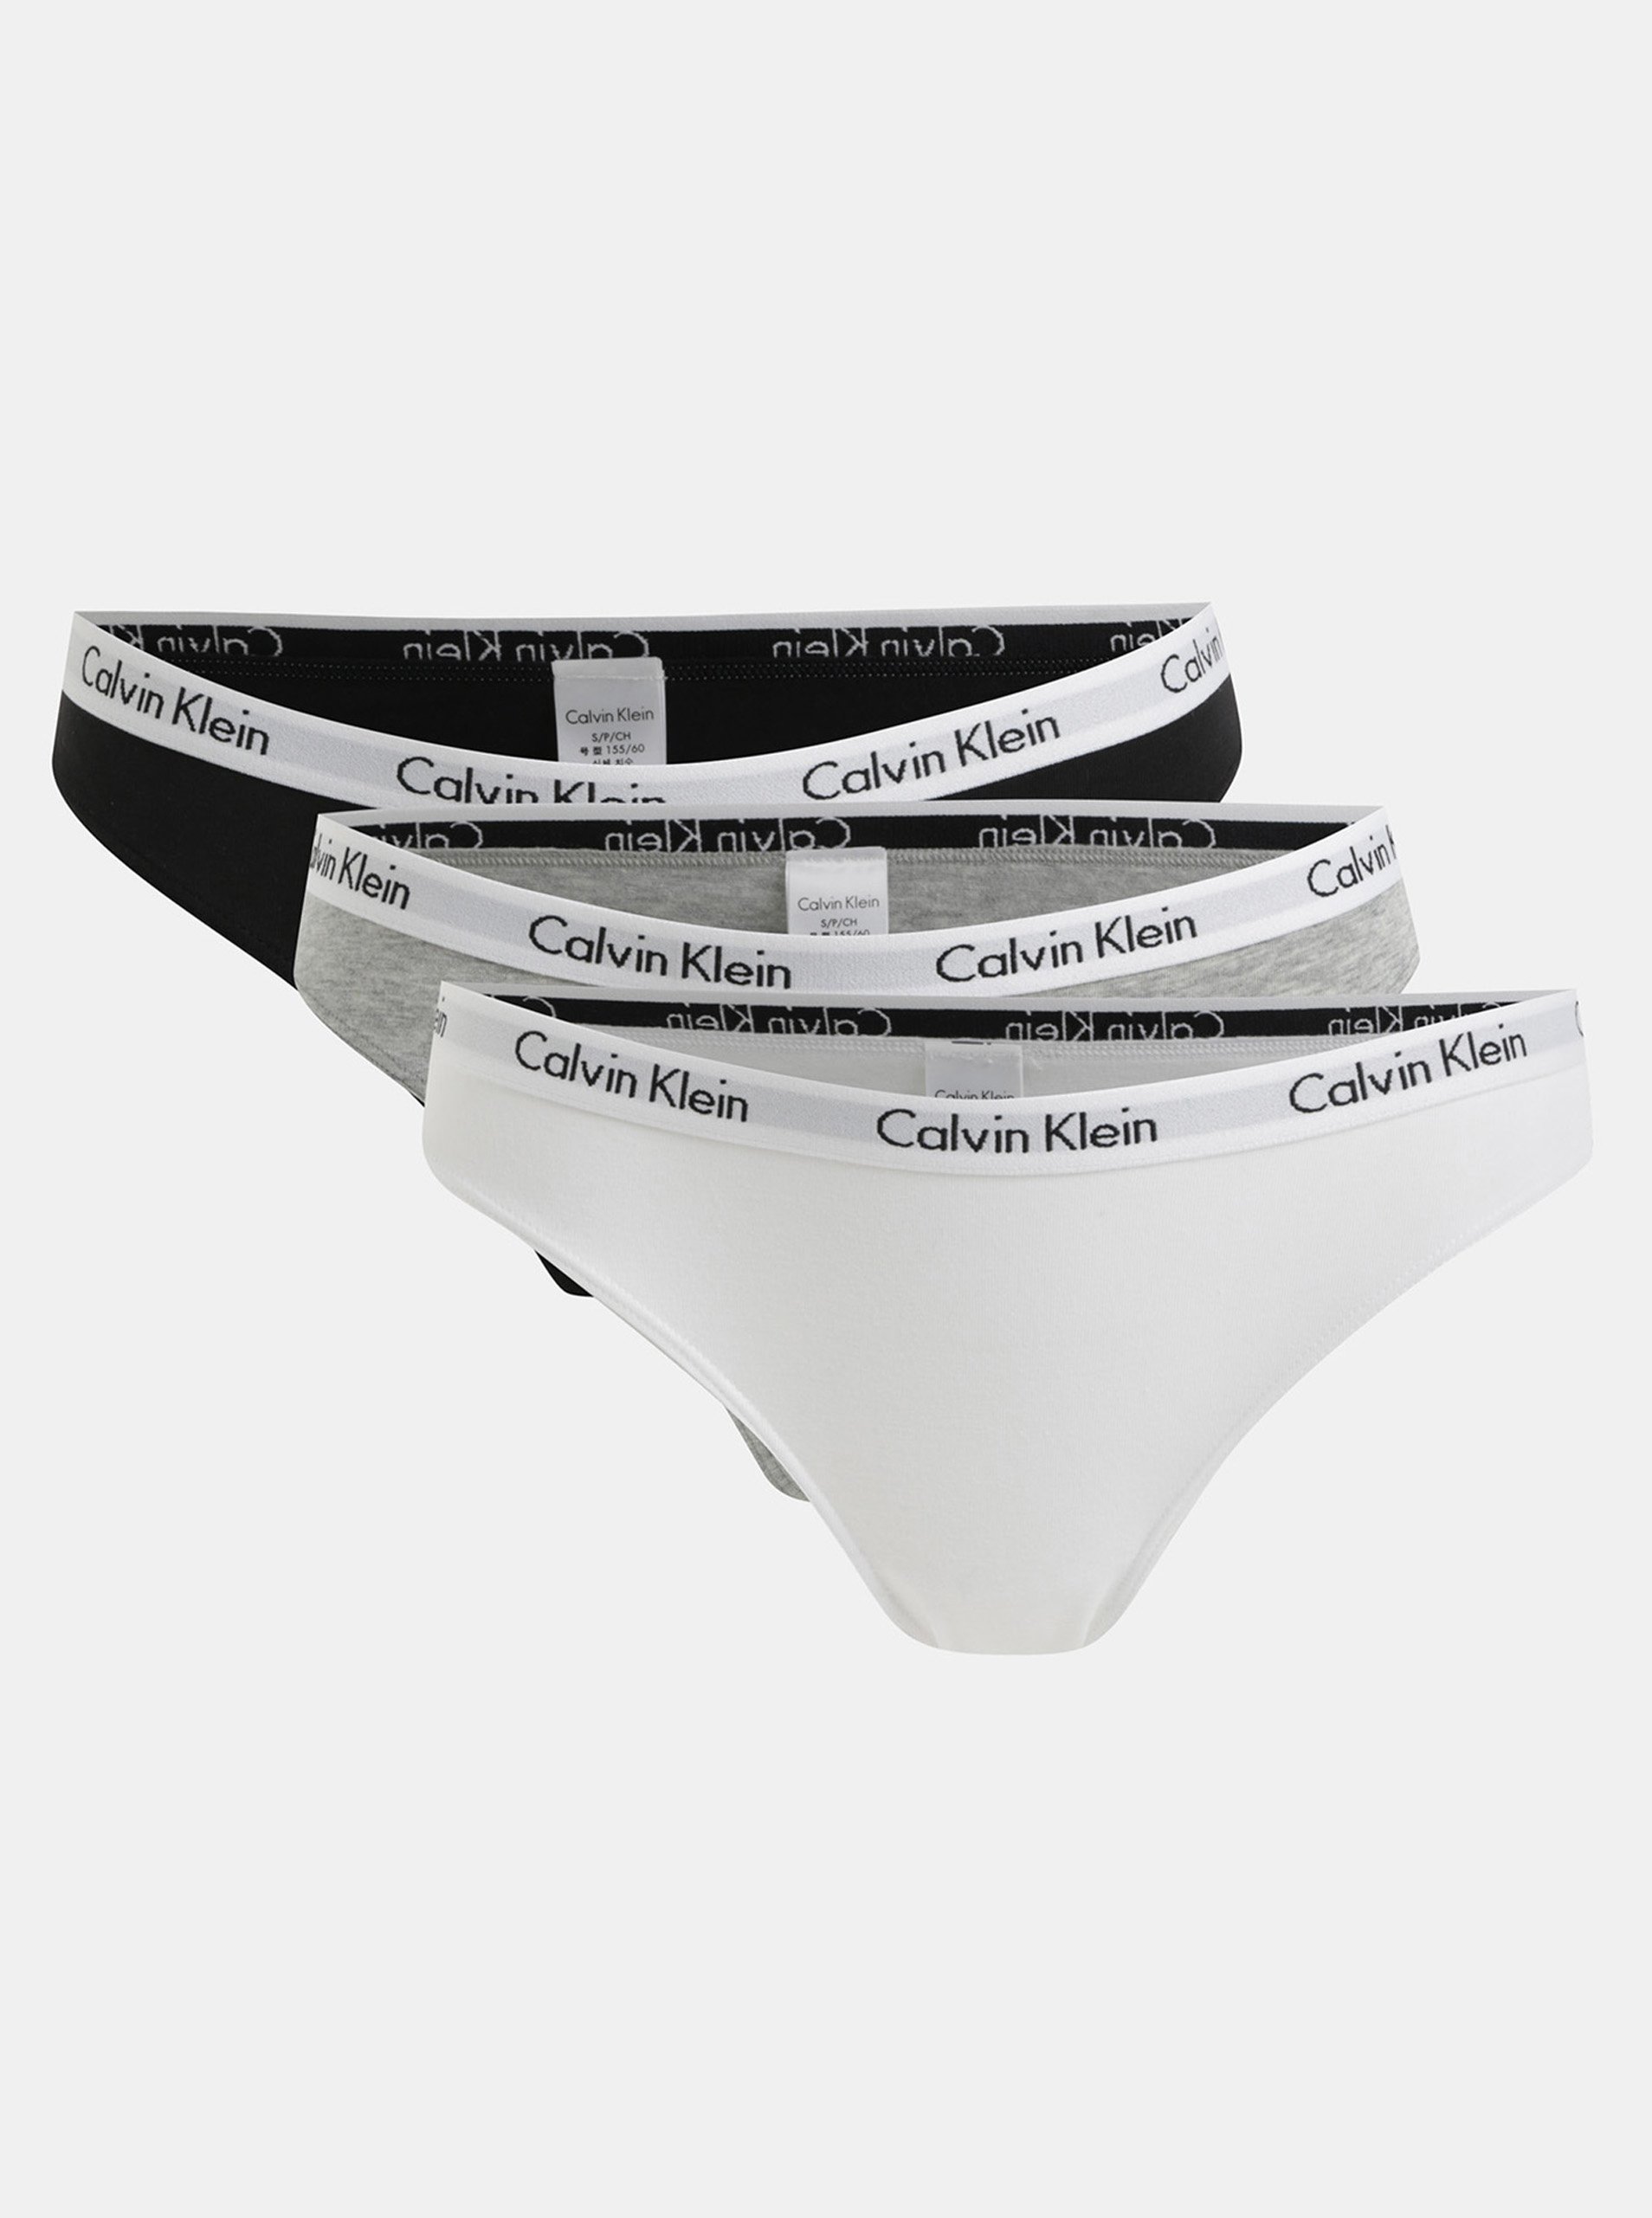 Lacno Balenie troch nohavičiek v bielej, sivej a čiernej farbe Calvin Klein Underwear